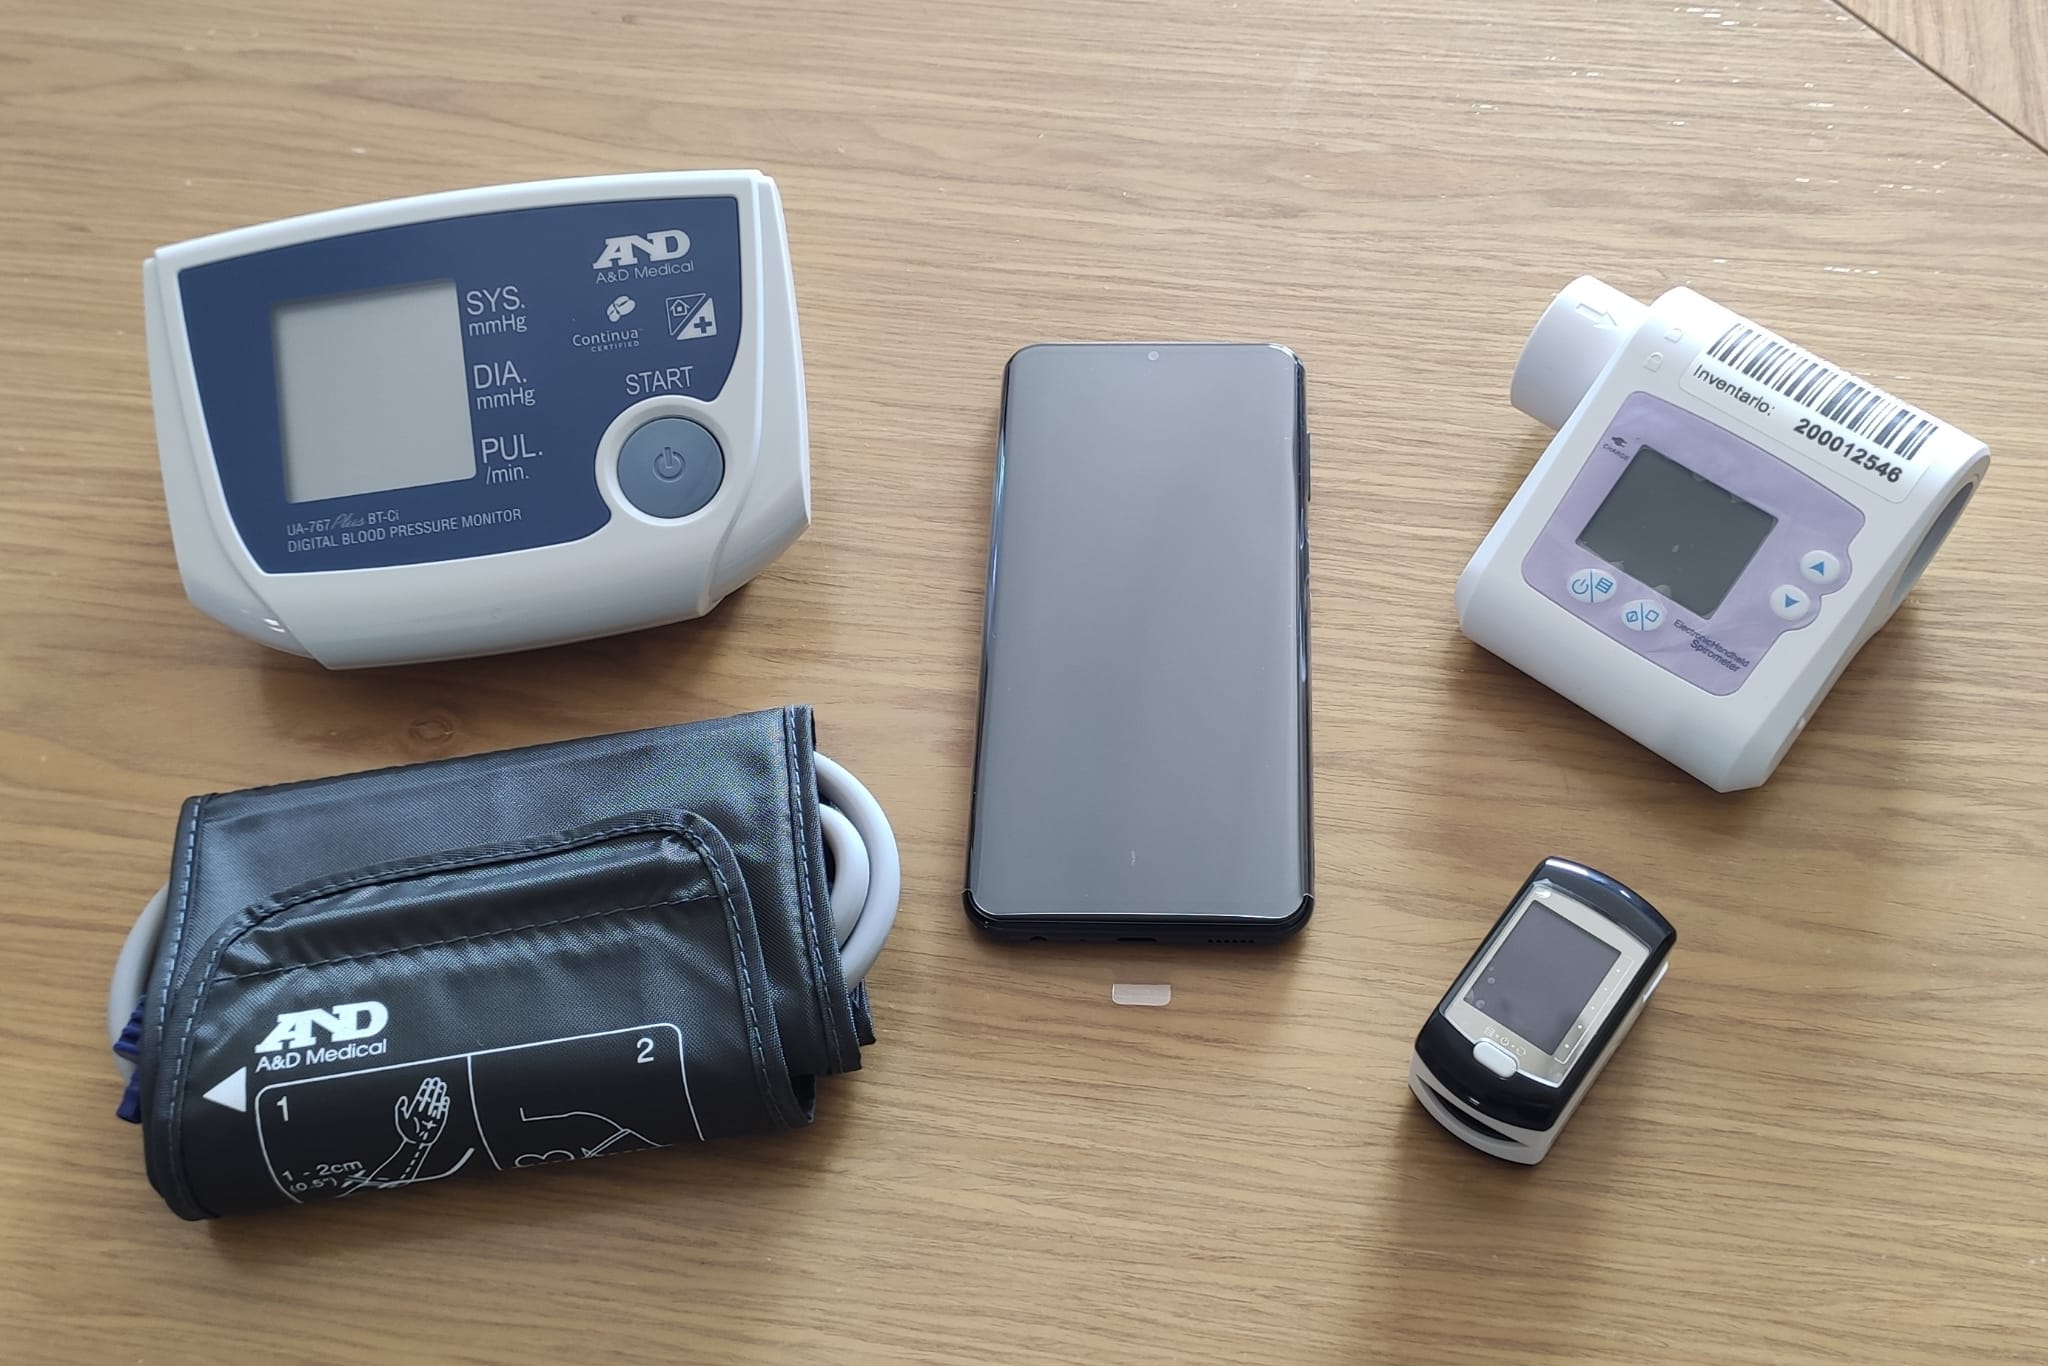  Dal Lions Club Alberto Pio 11 kit di telemedicina per il monitoraggio a distanza dei pazienti cronici